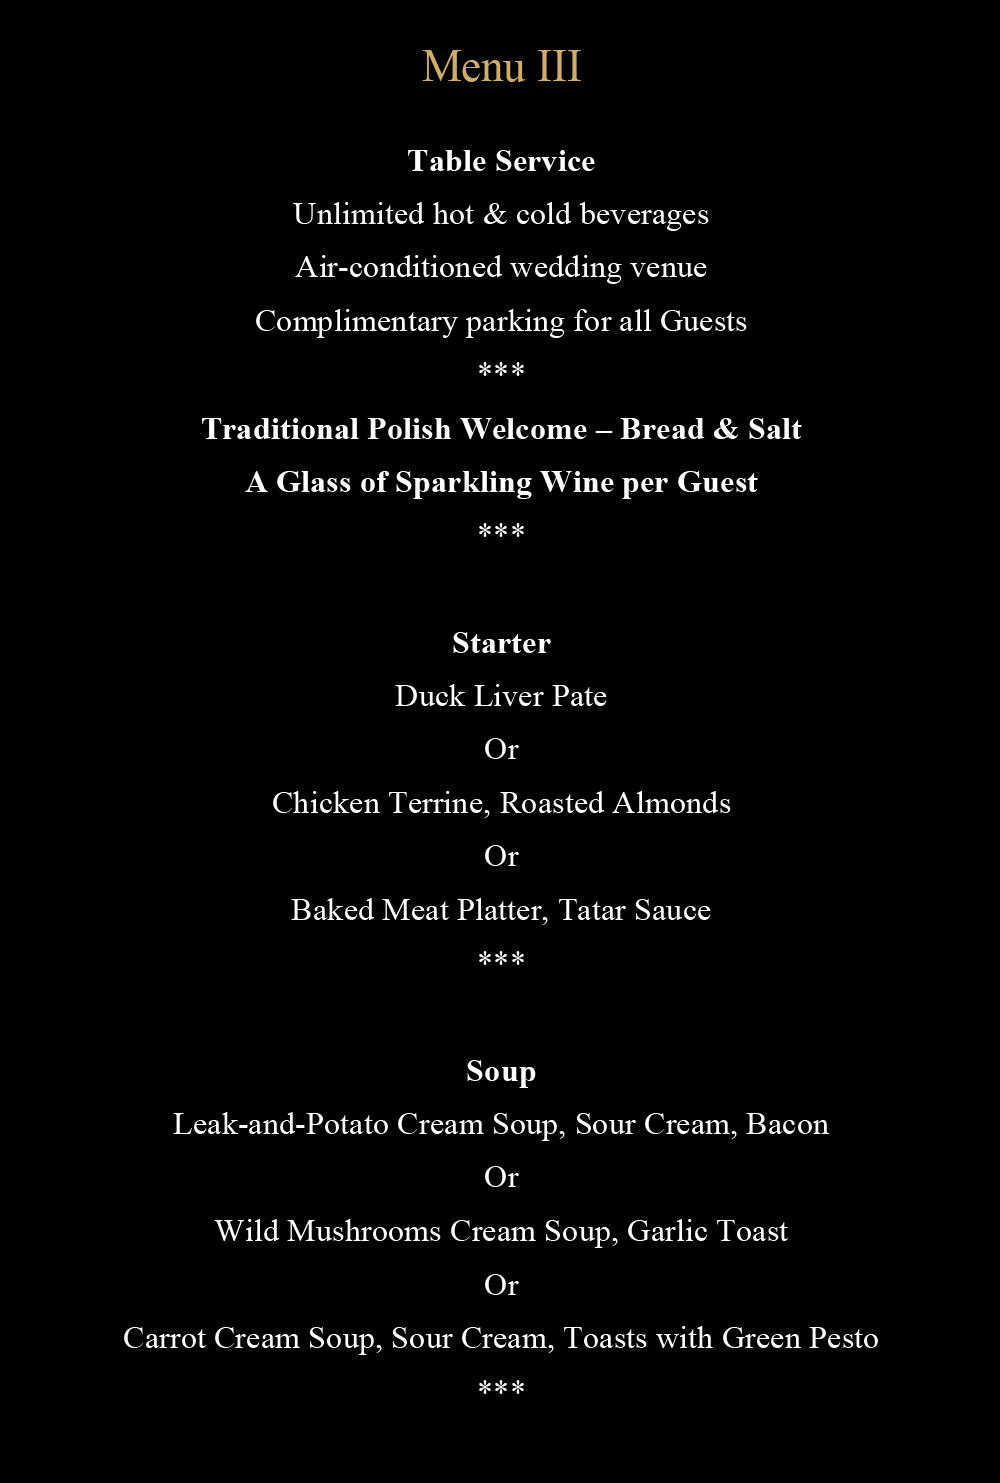 Wedding menu III